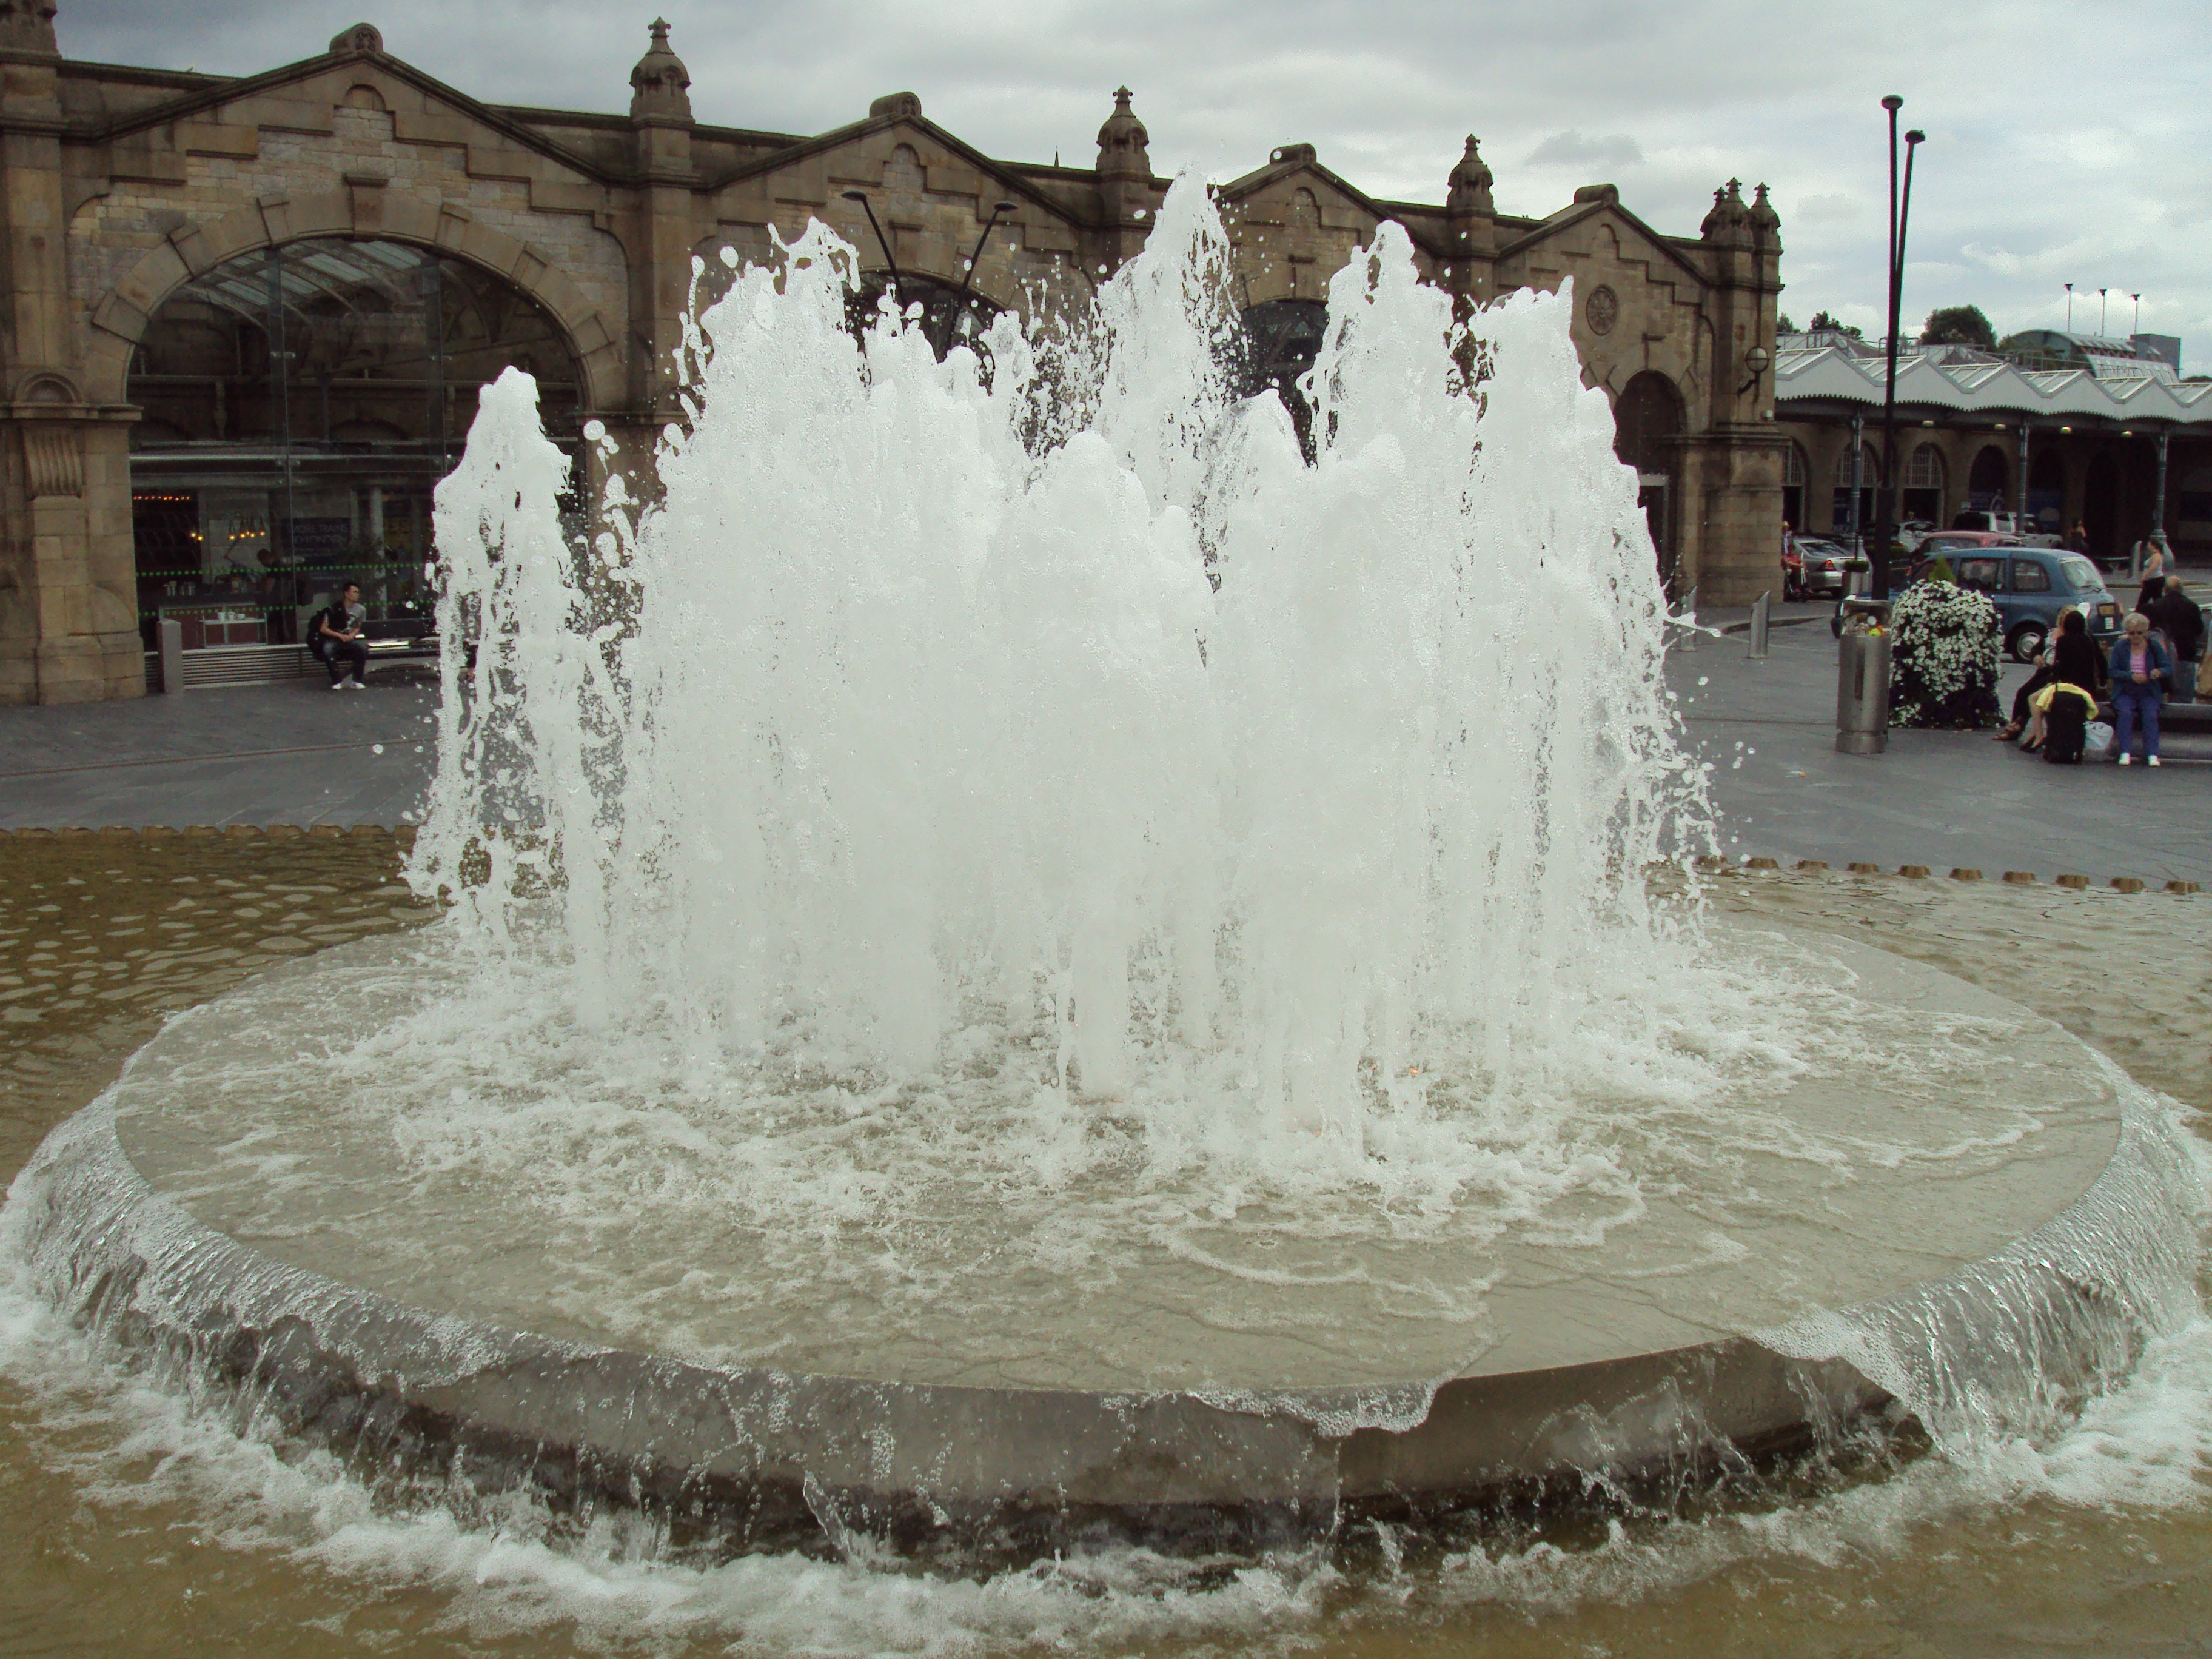 File:Water fountain outside Sheffield railway station - DSC07417.JPG ...